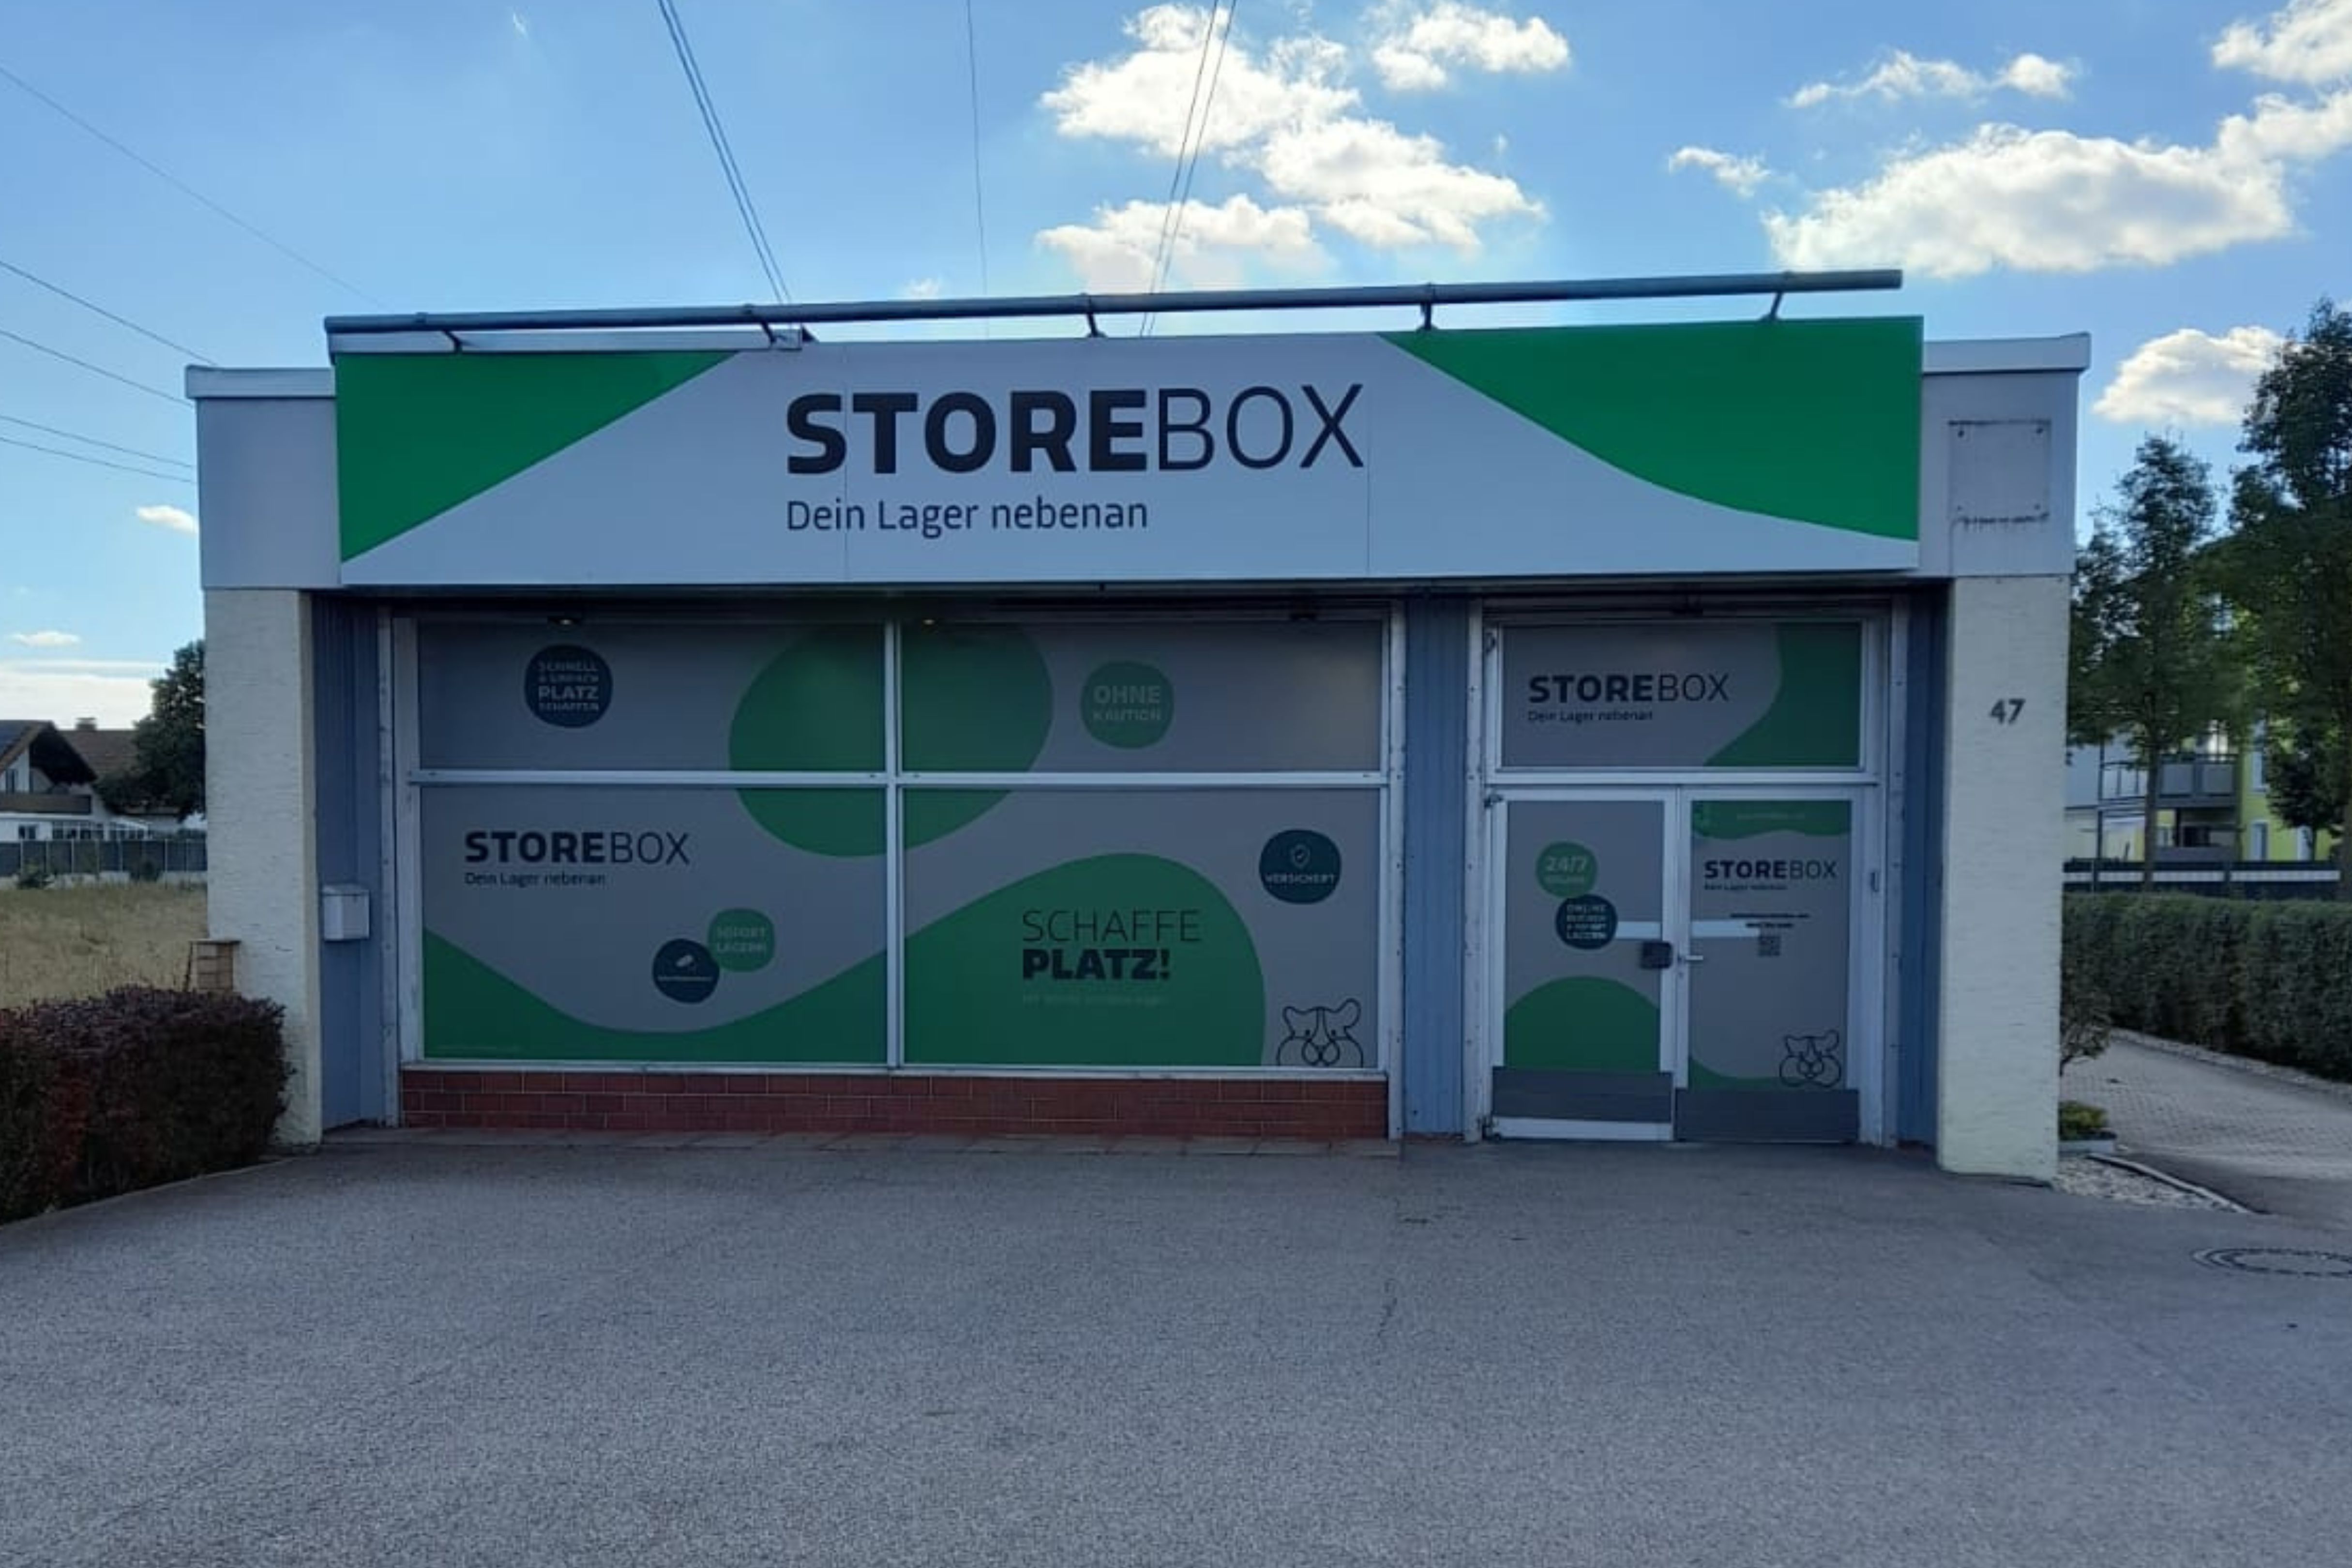 Bild 4 Storebox - Dein Lager nebenan in Landshut